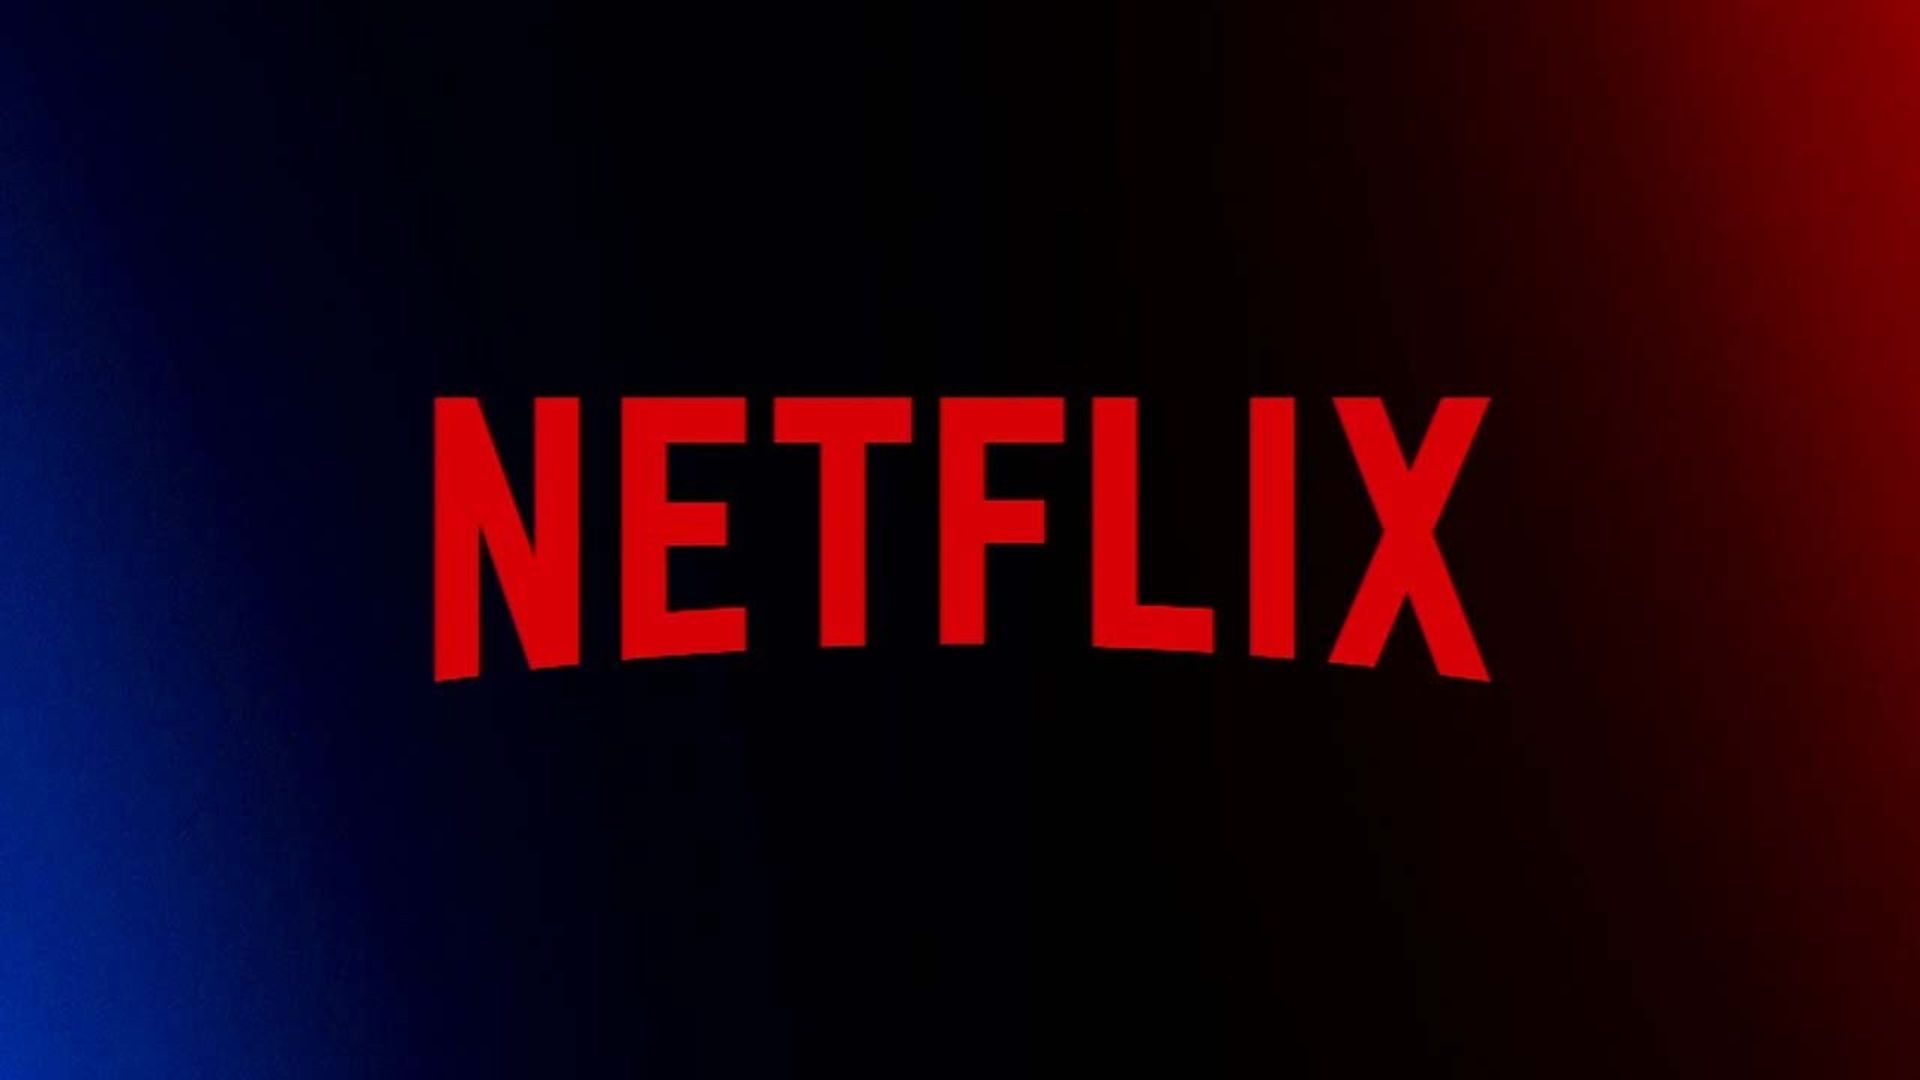 Netflix é Multada em R$ 11 Milhões pelo Procon/MG por Cláusulas Abusivas